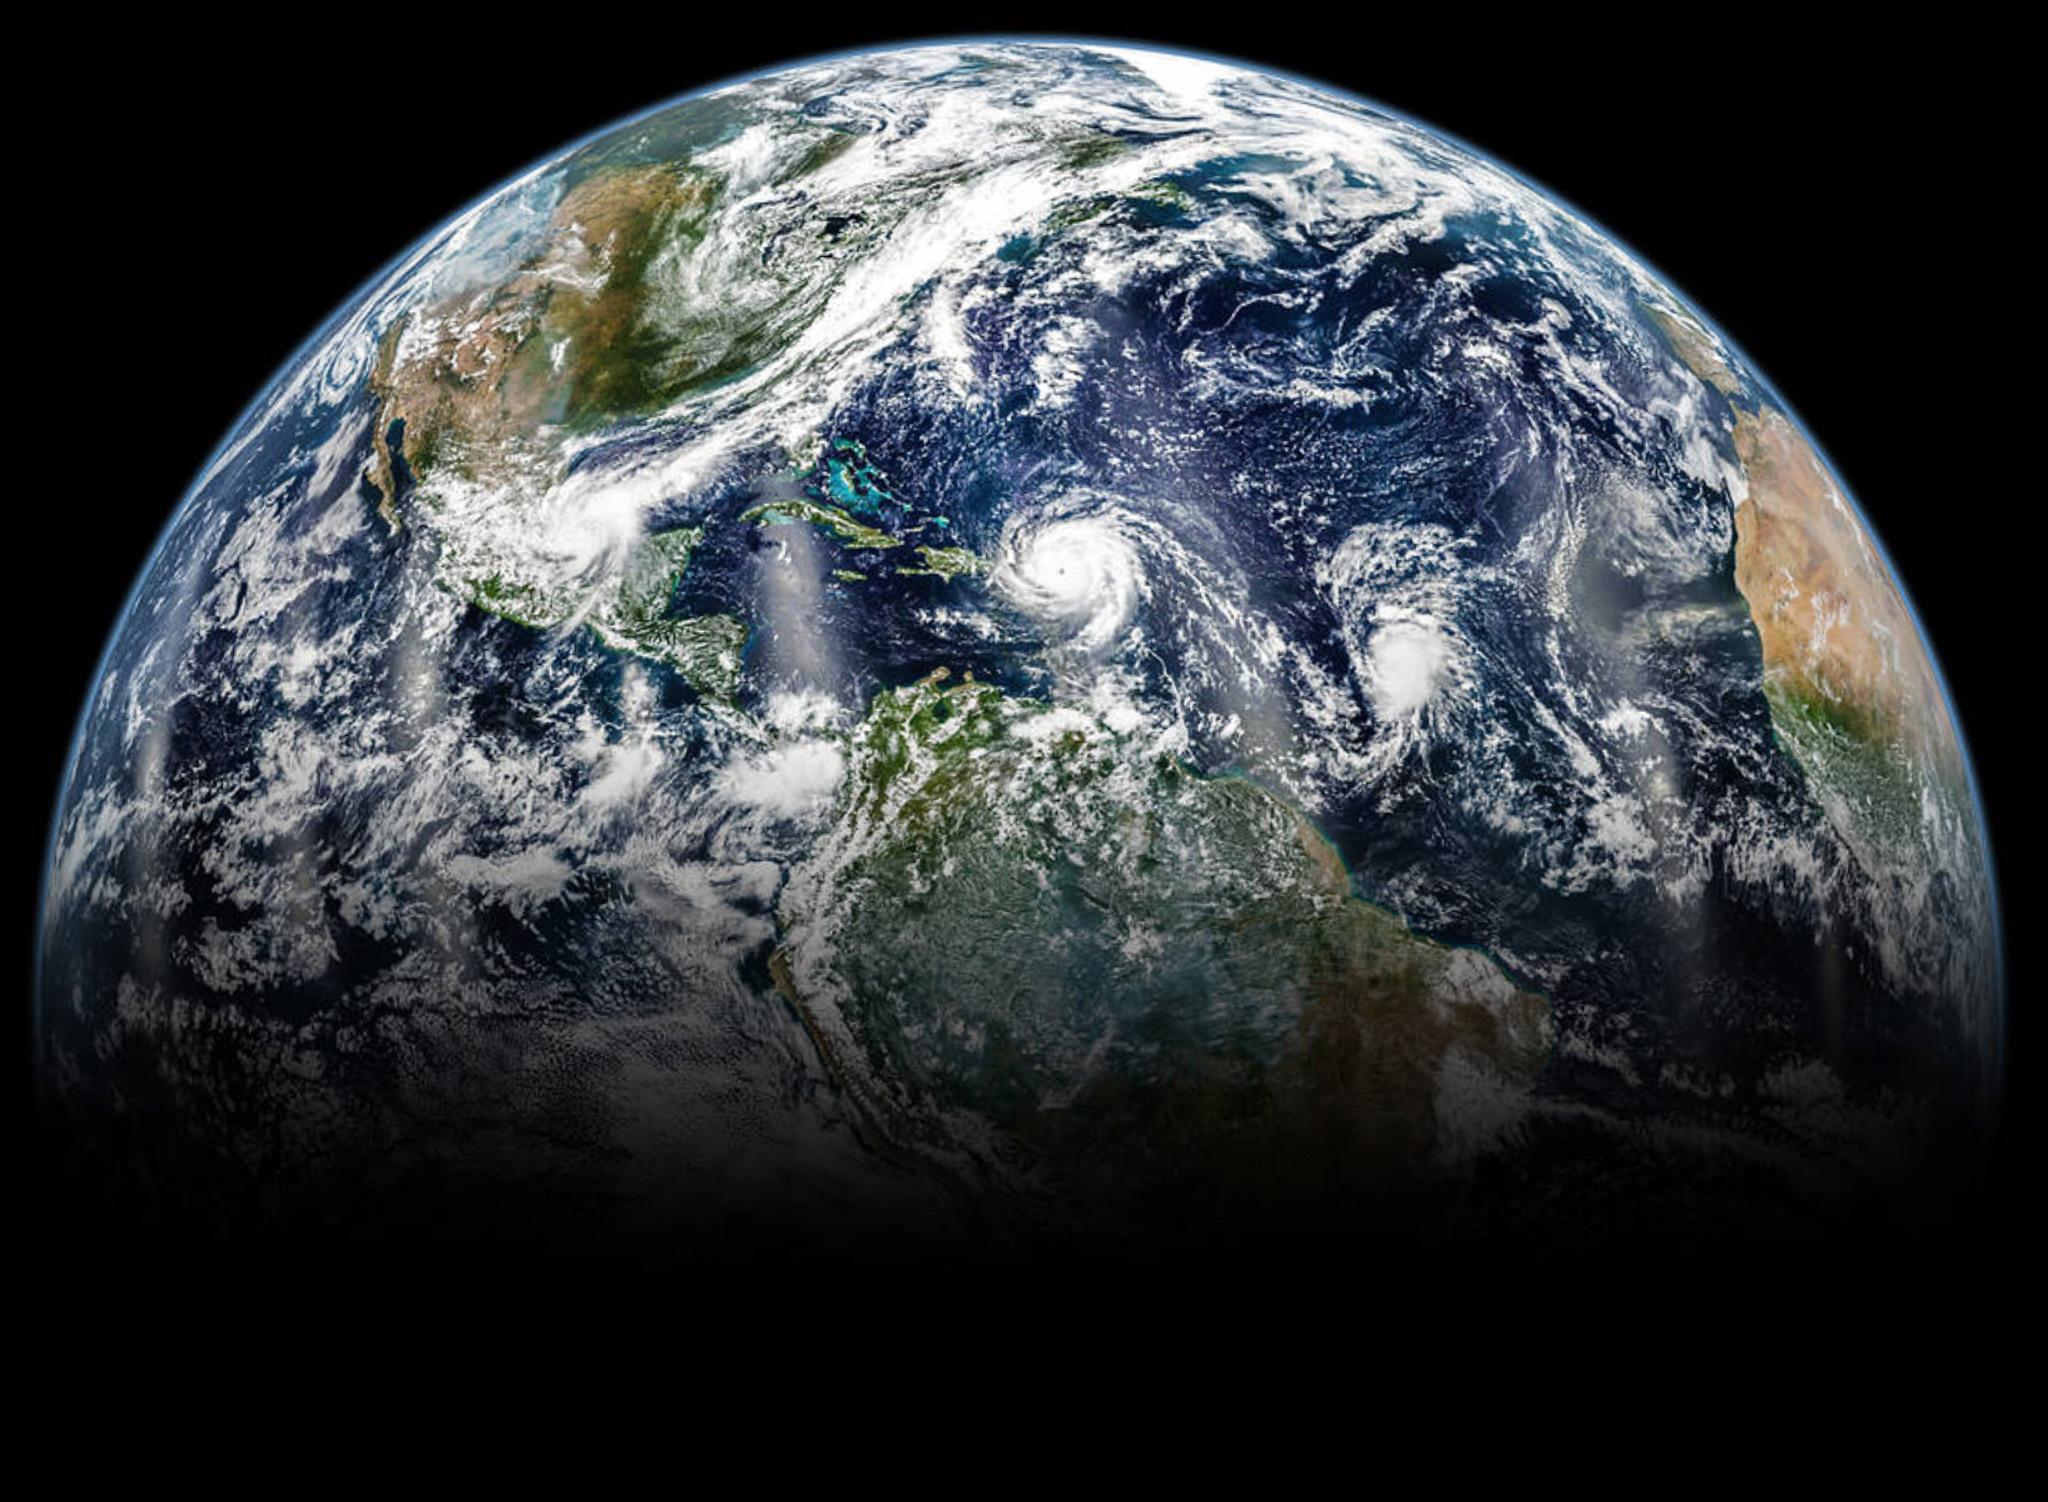 Earth (Credit NASA/Joshua Stevens)